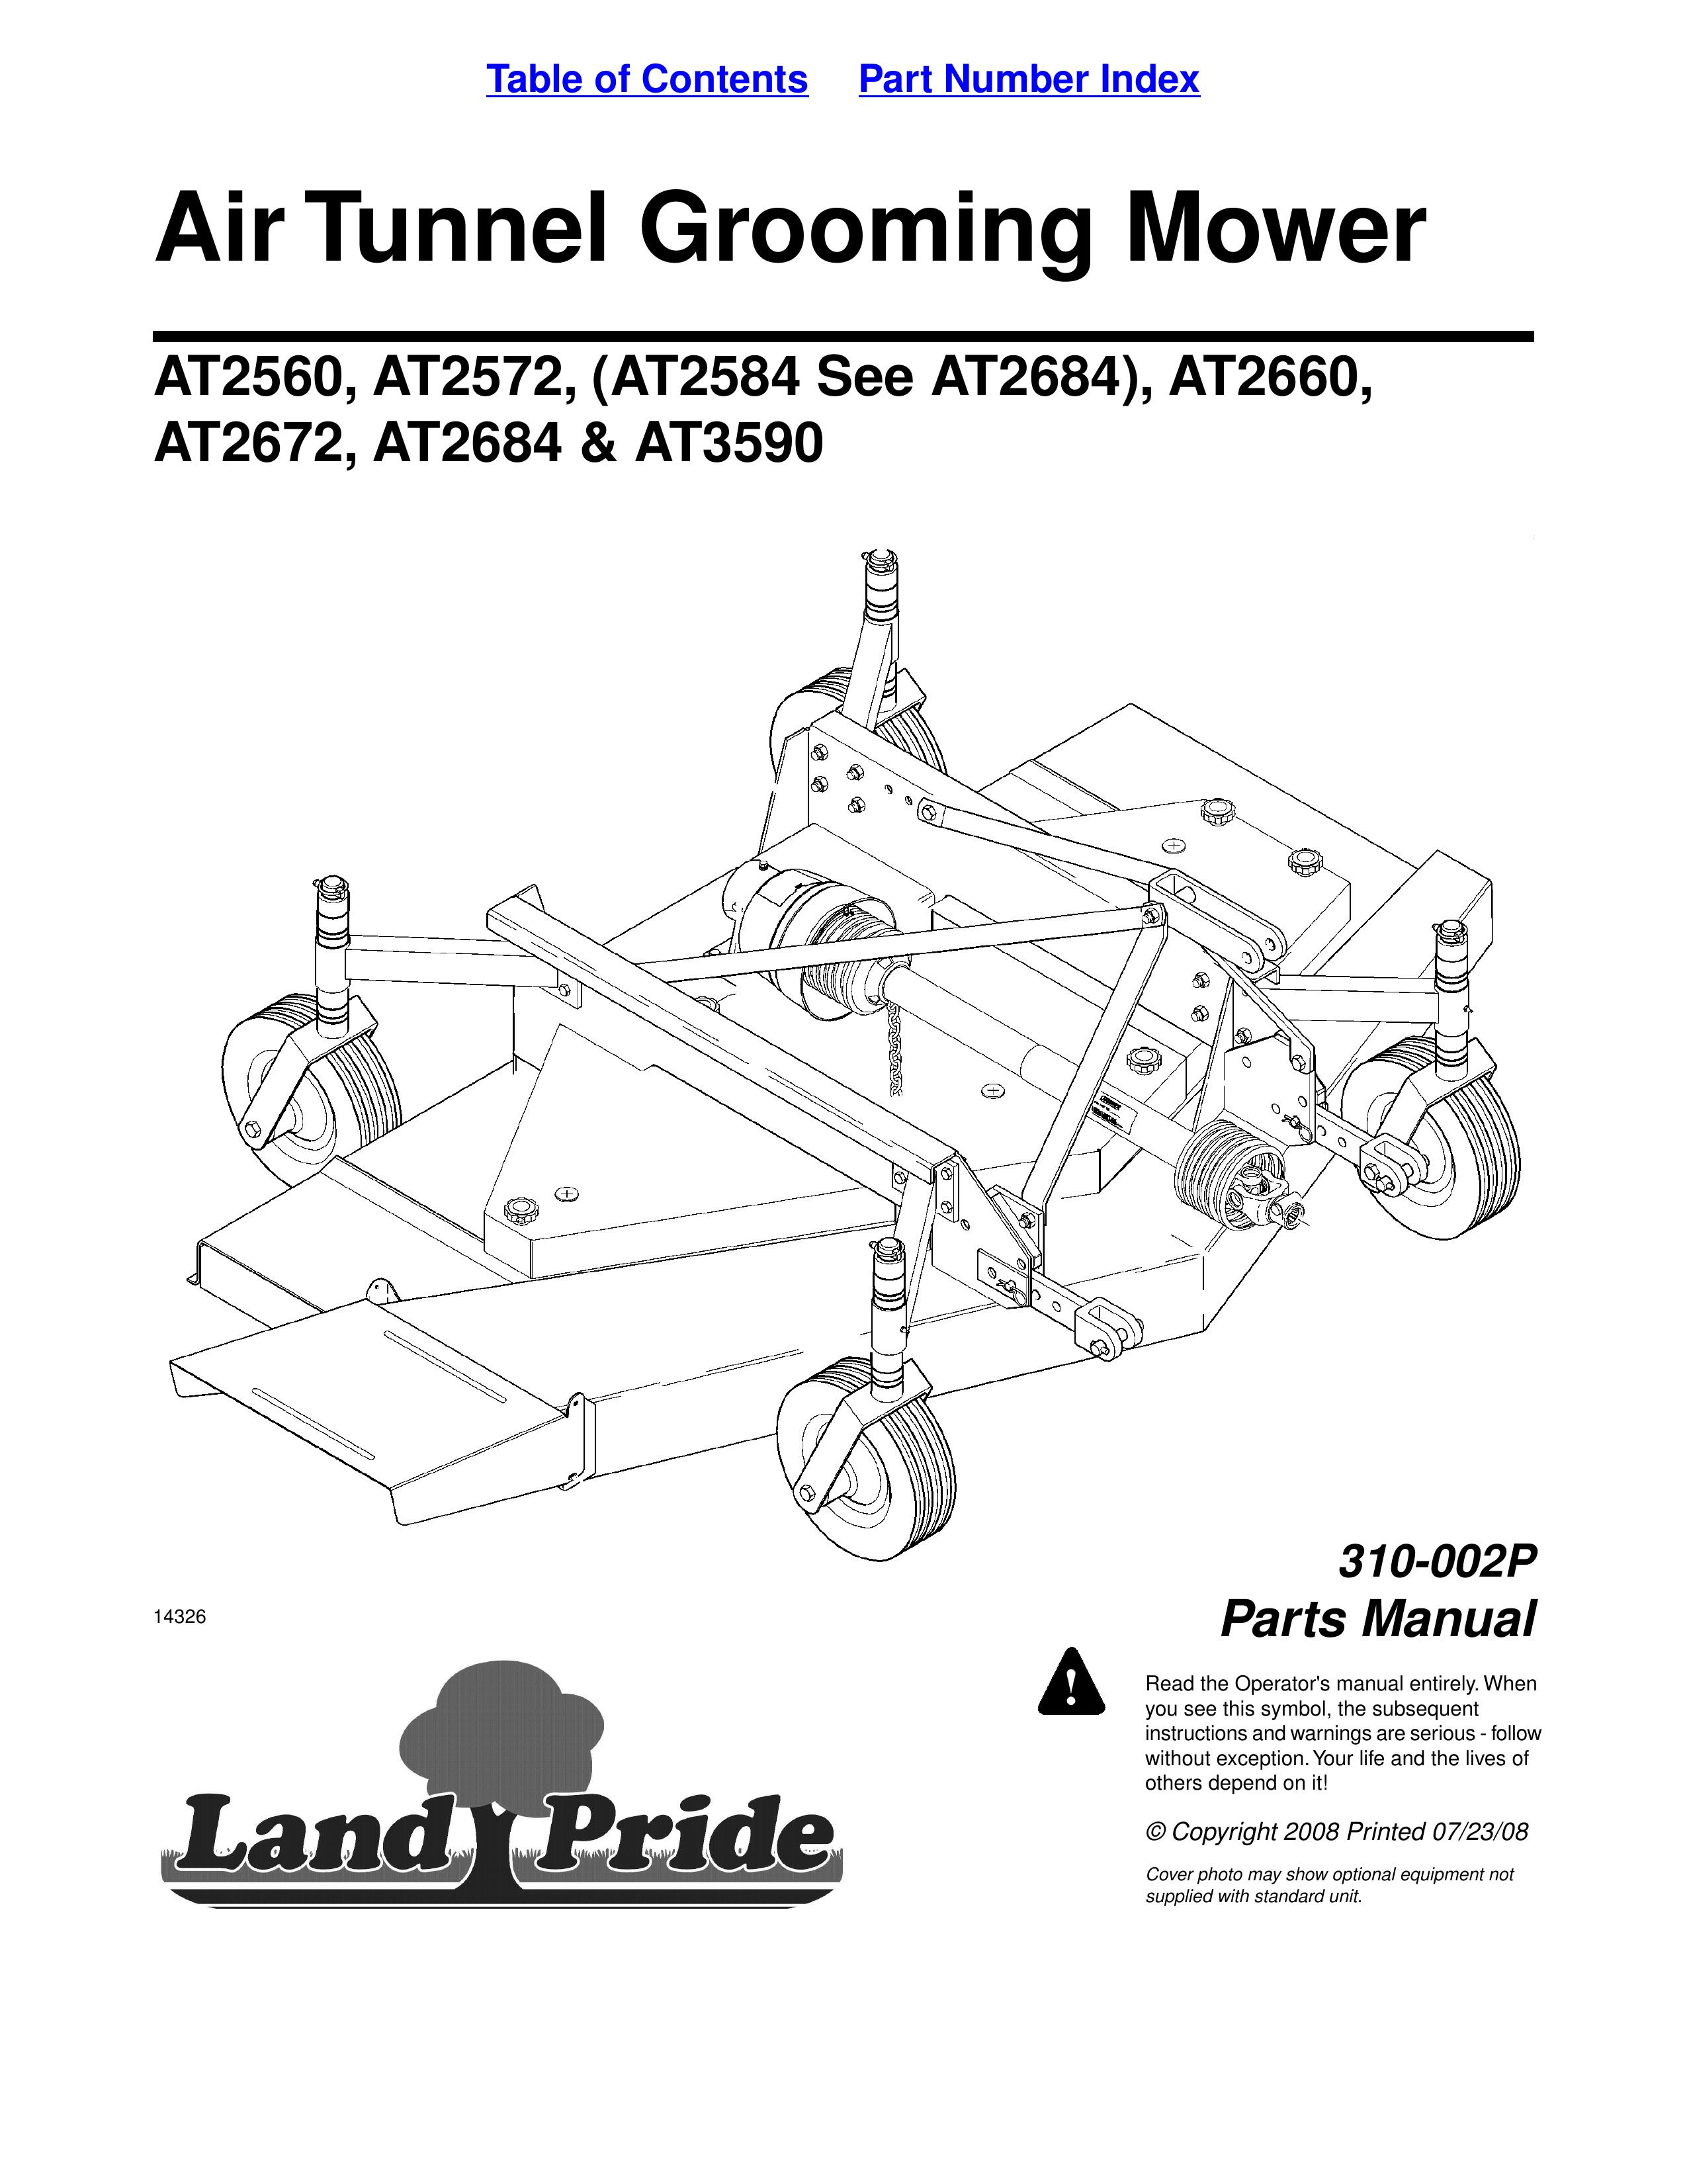 Land Pride at 2560 Lawn Mower User Manual